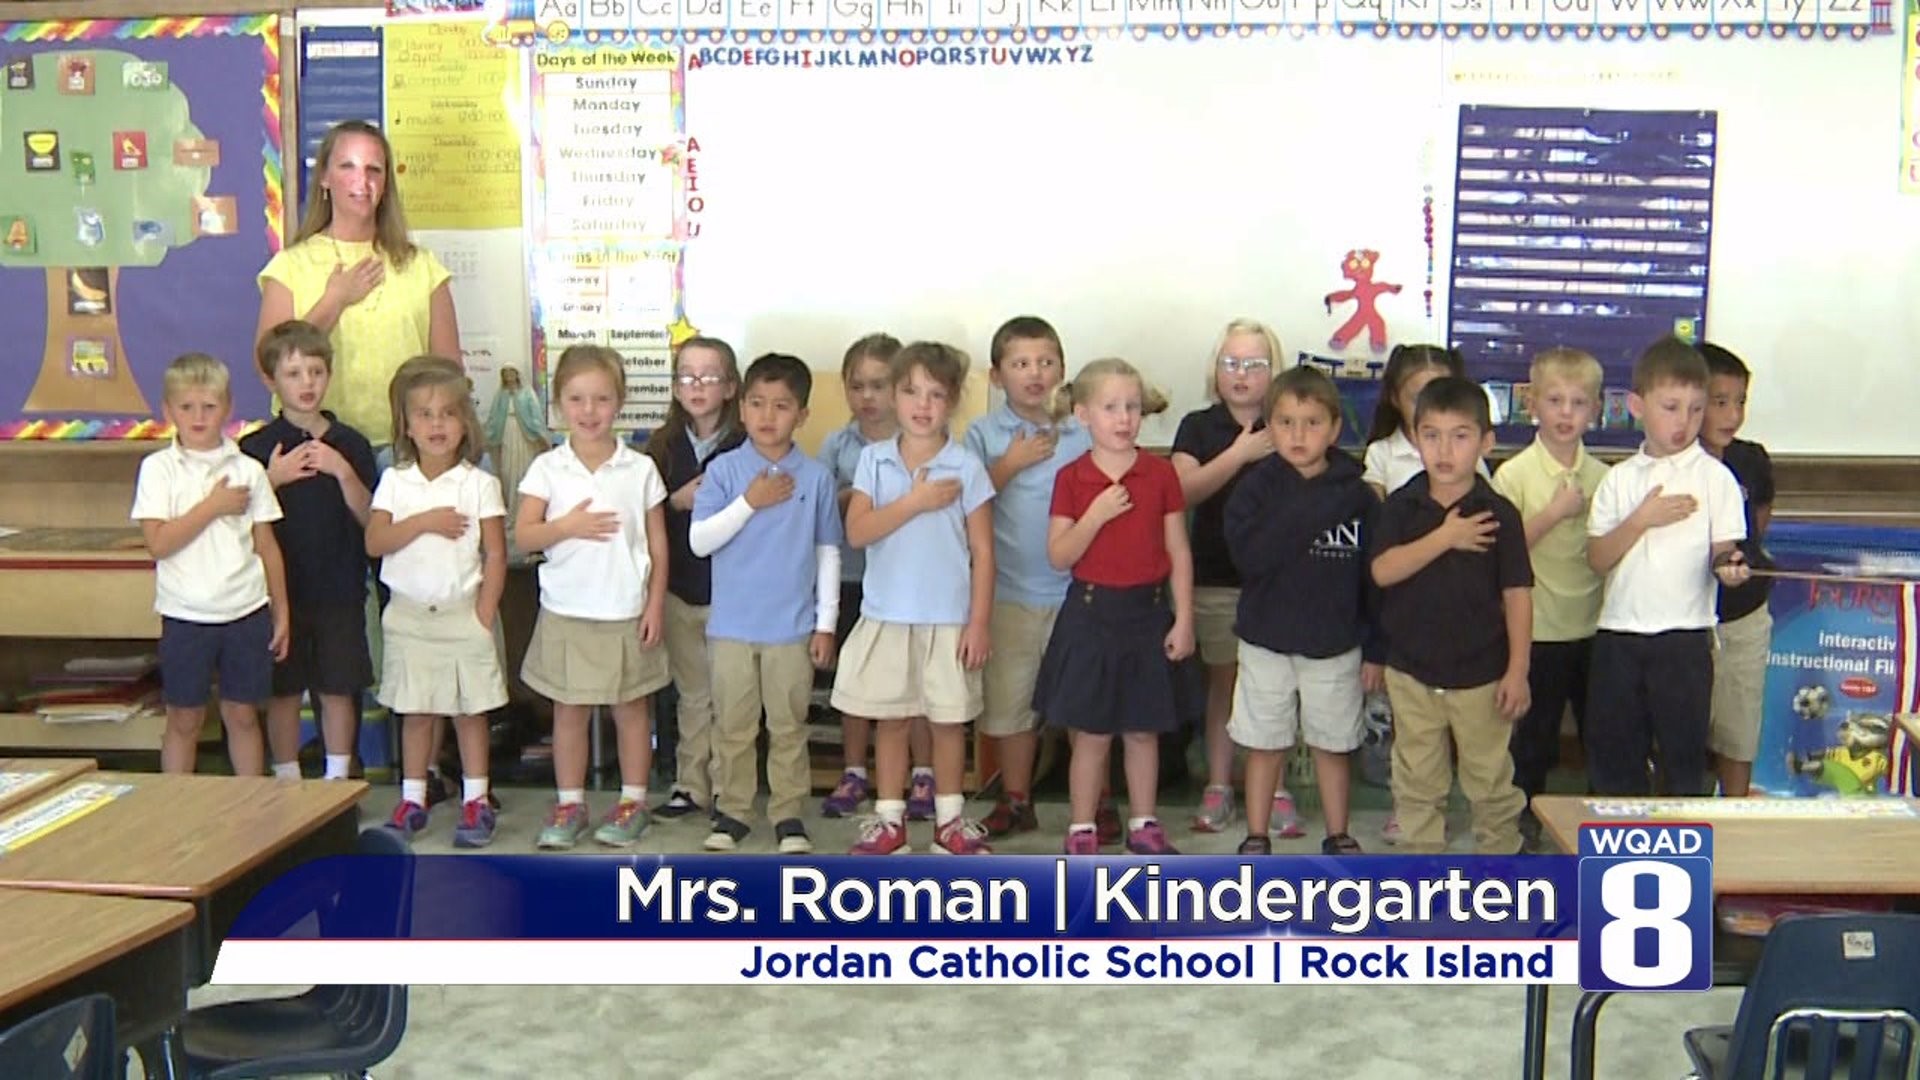 Mrs Roman Kindergarten - Jordan Catholic School